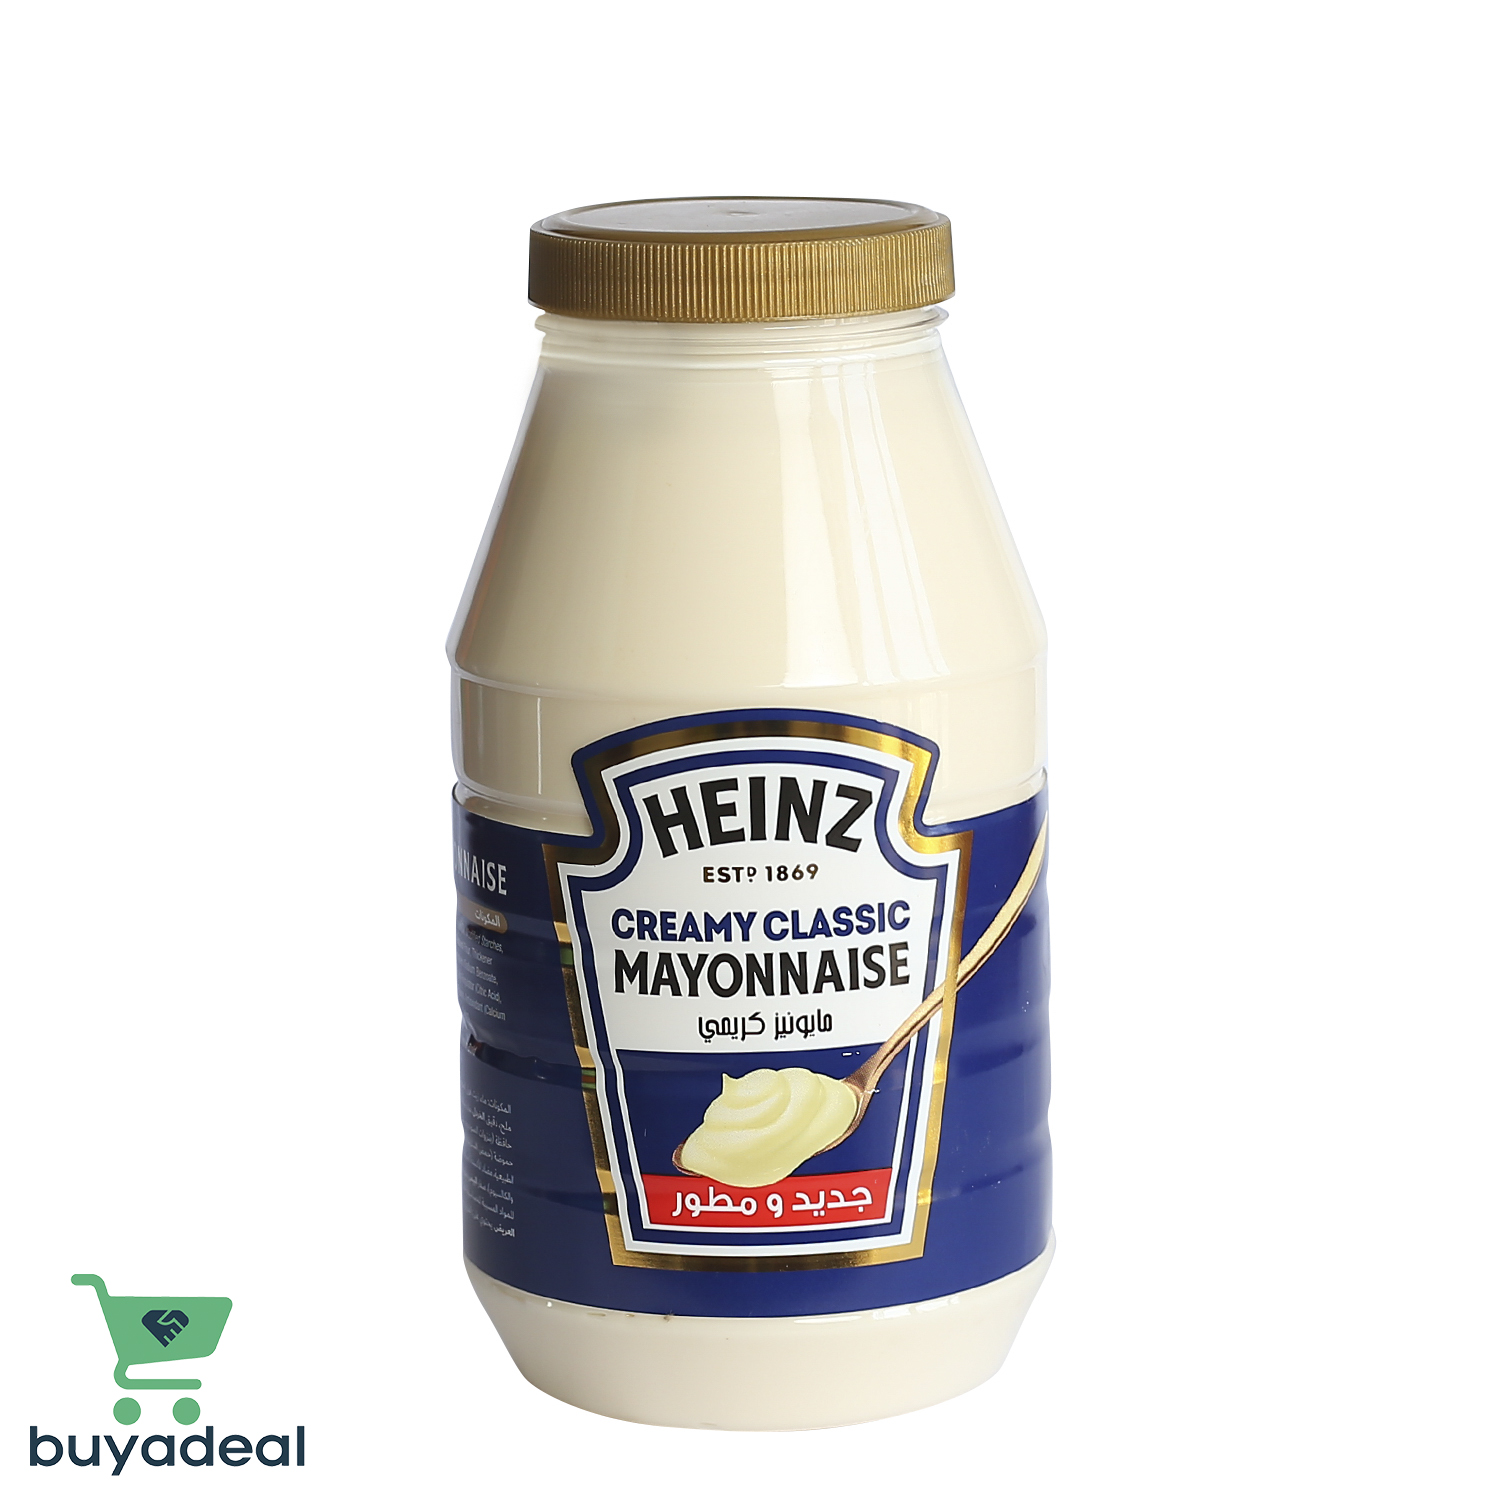 Buyadeal Product Heinz Creamy Classic Mayonnaise  940g